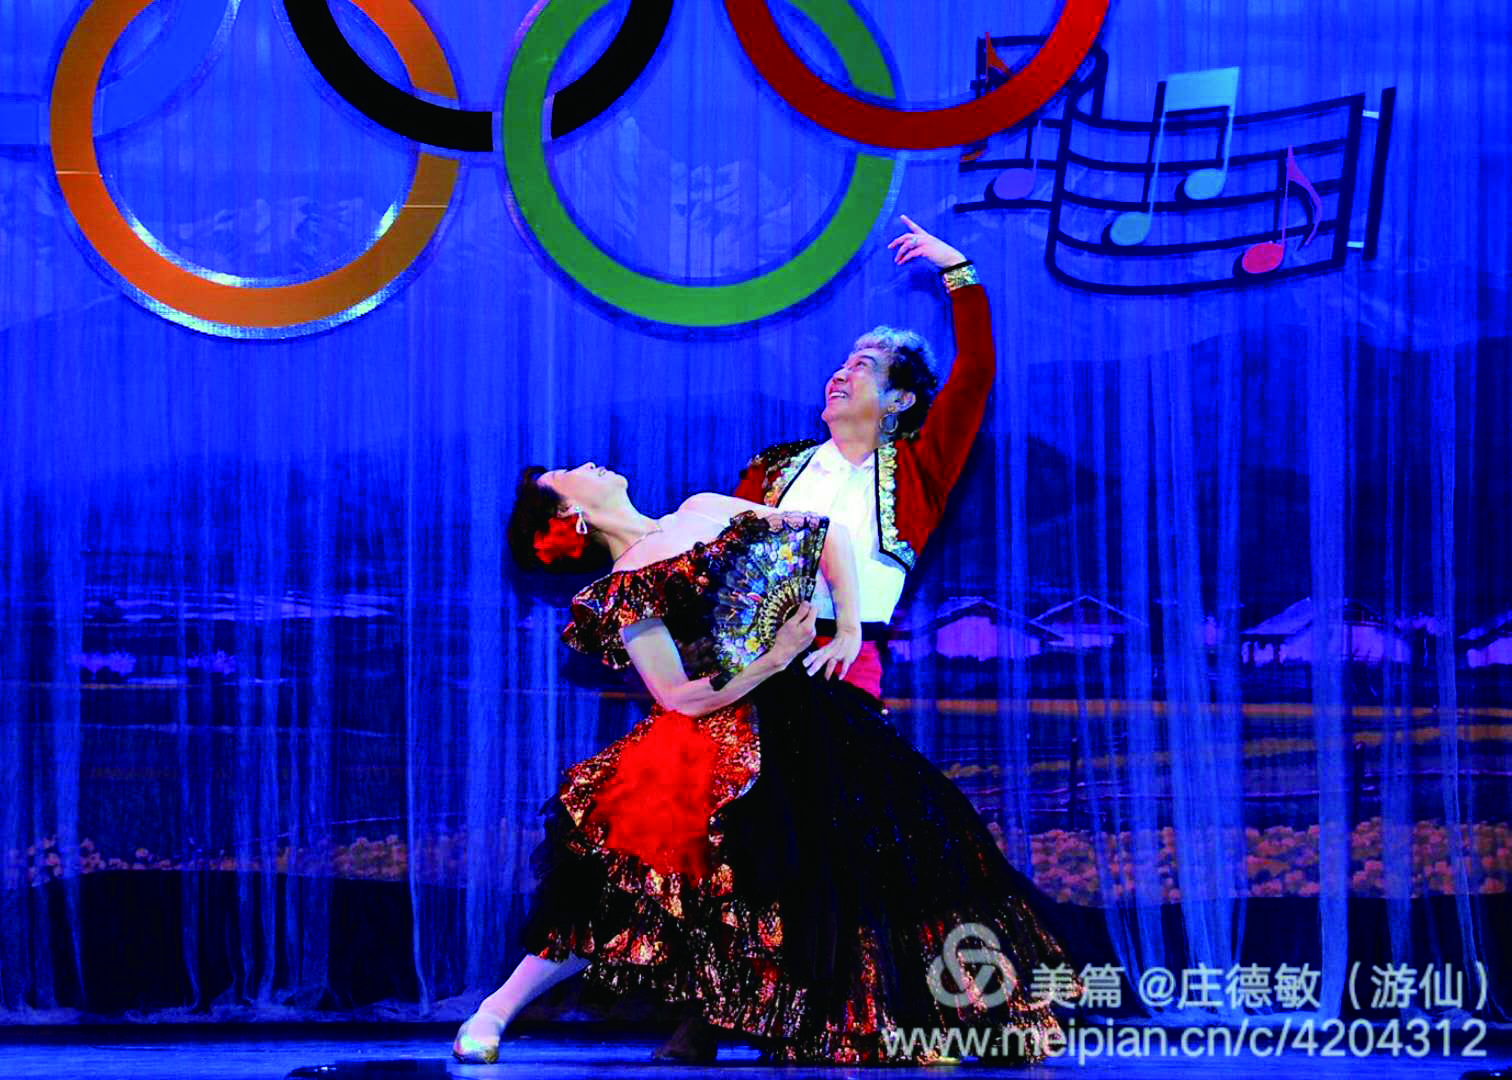 2庆祝北京奥运会召开表演西班牙舞蹈